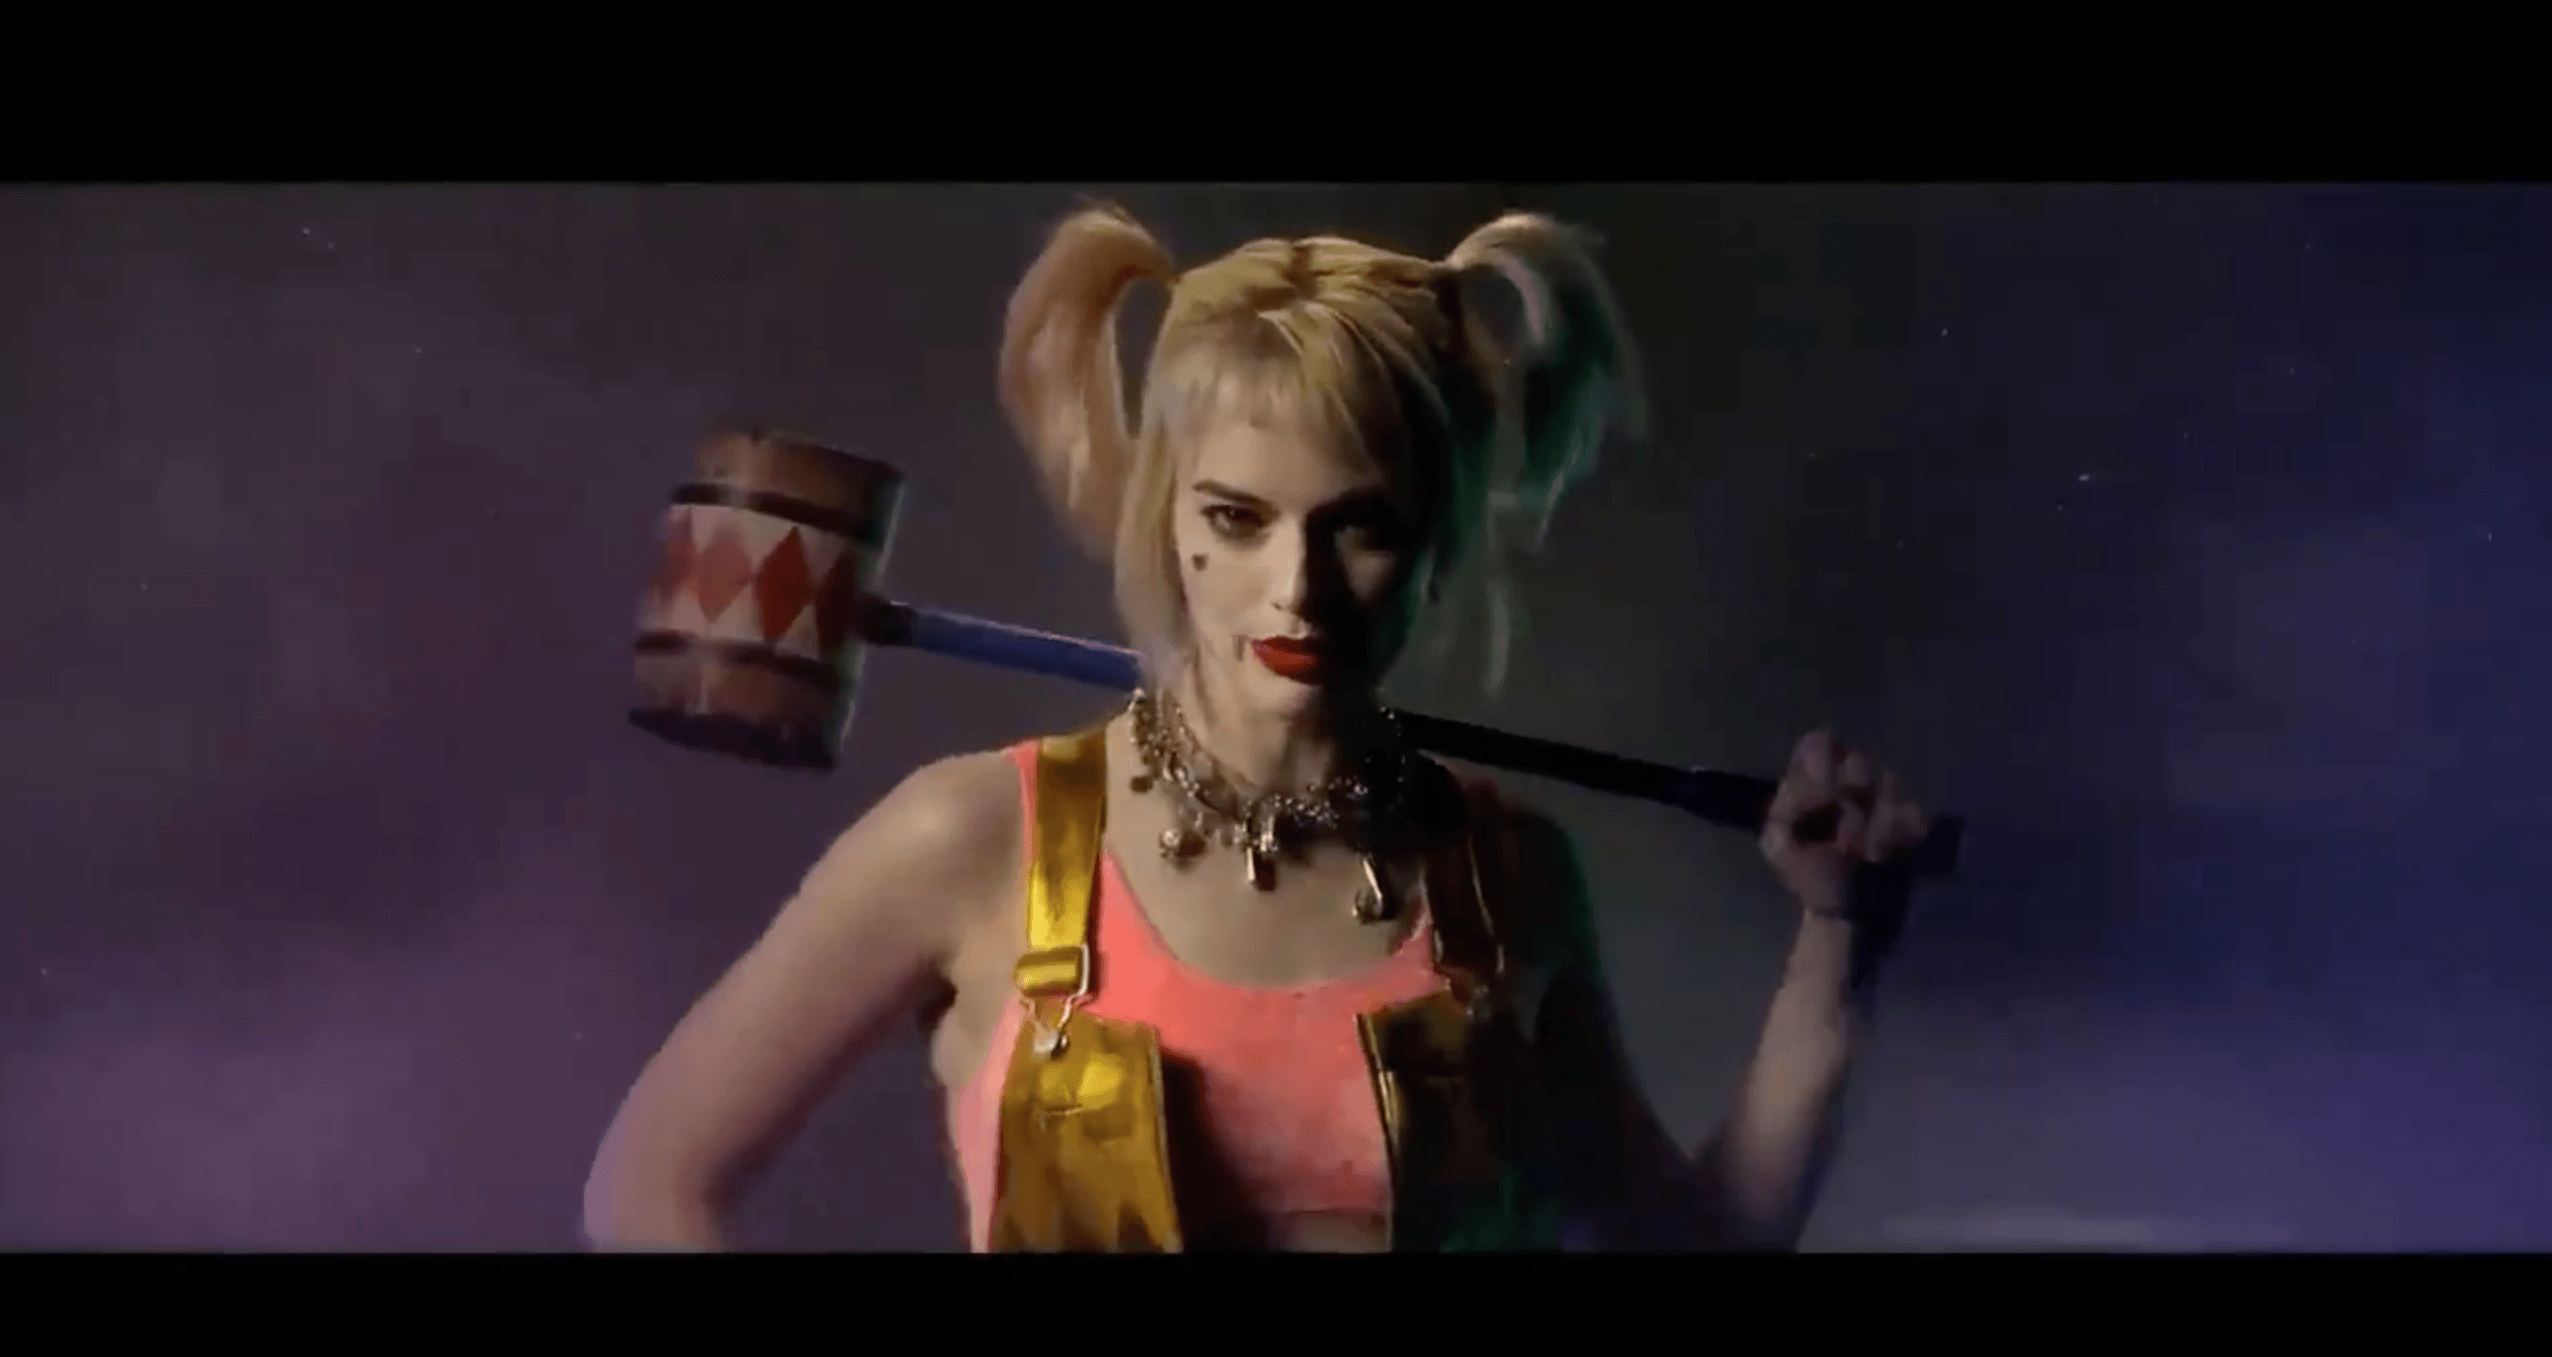 Margot Robbie is back as Harley Quinn in 'Birds of Prey' teaser